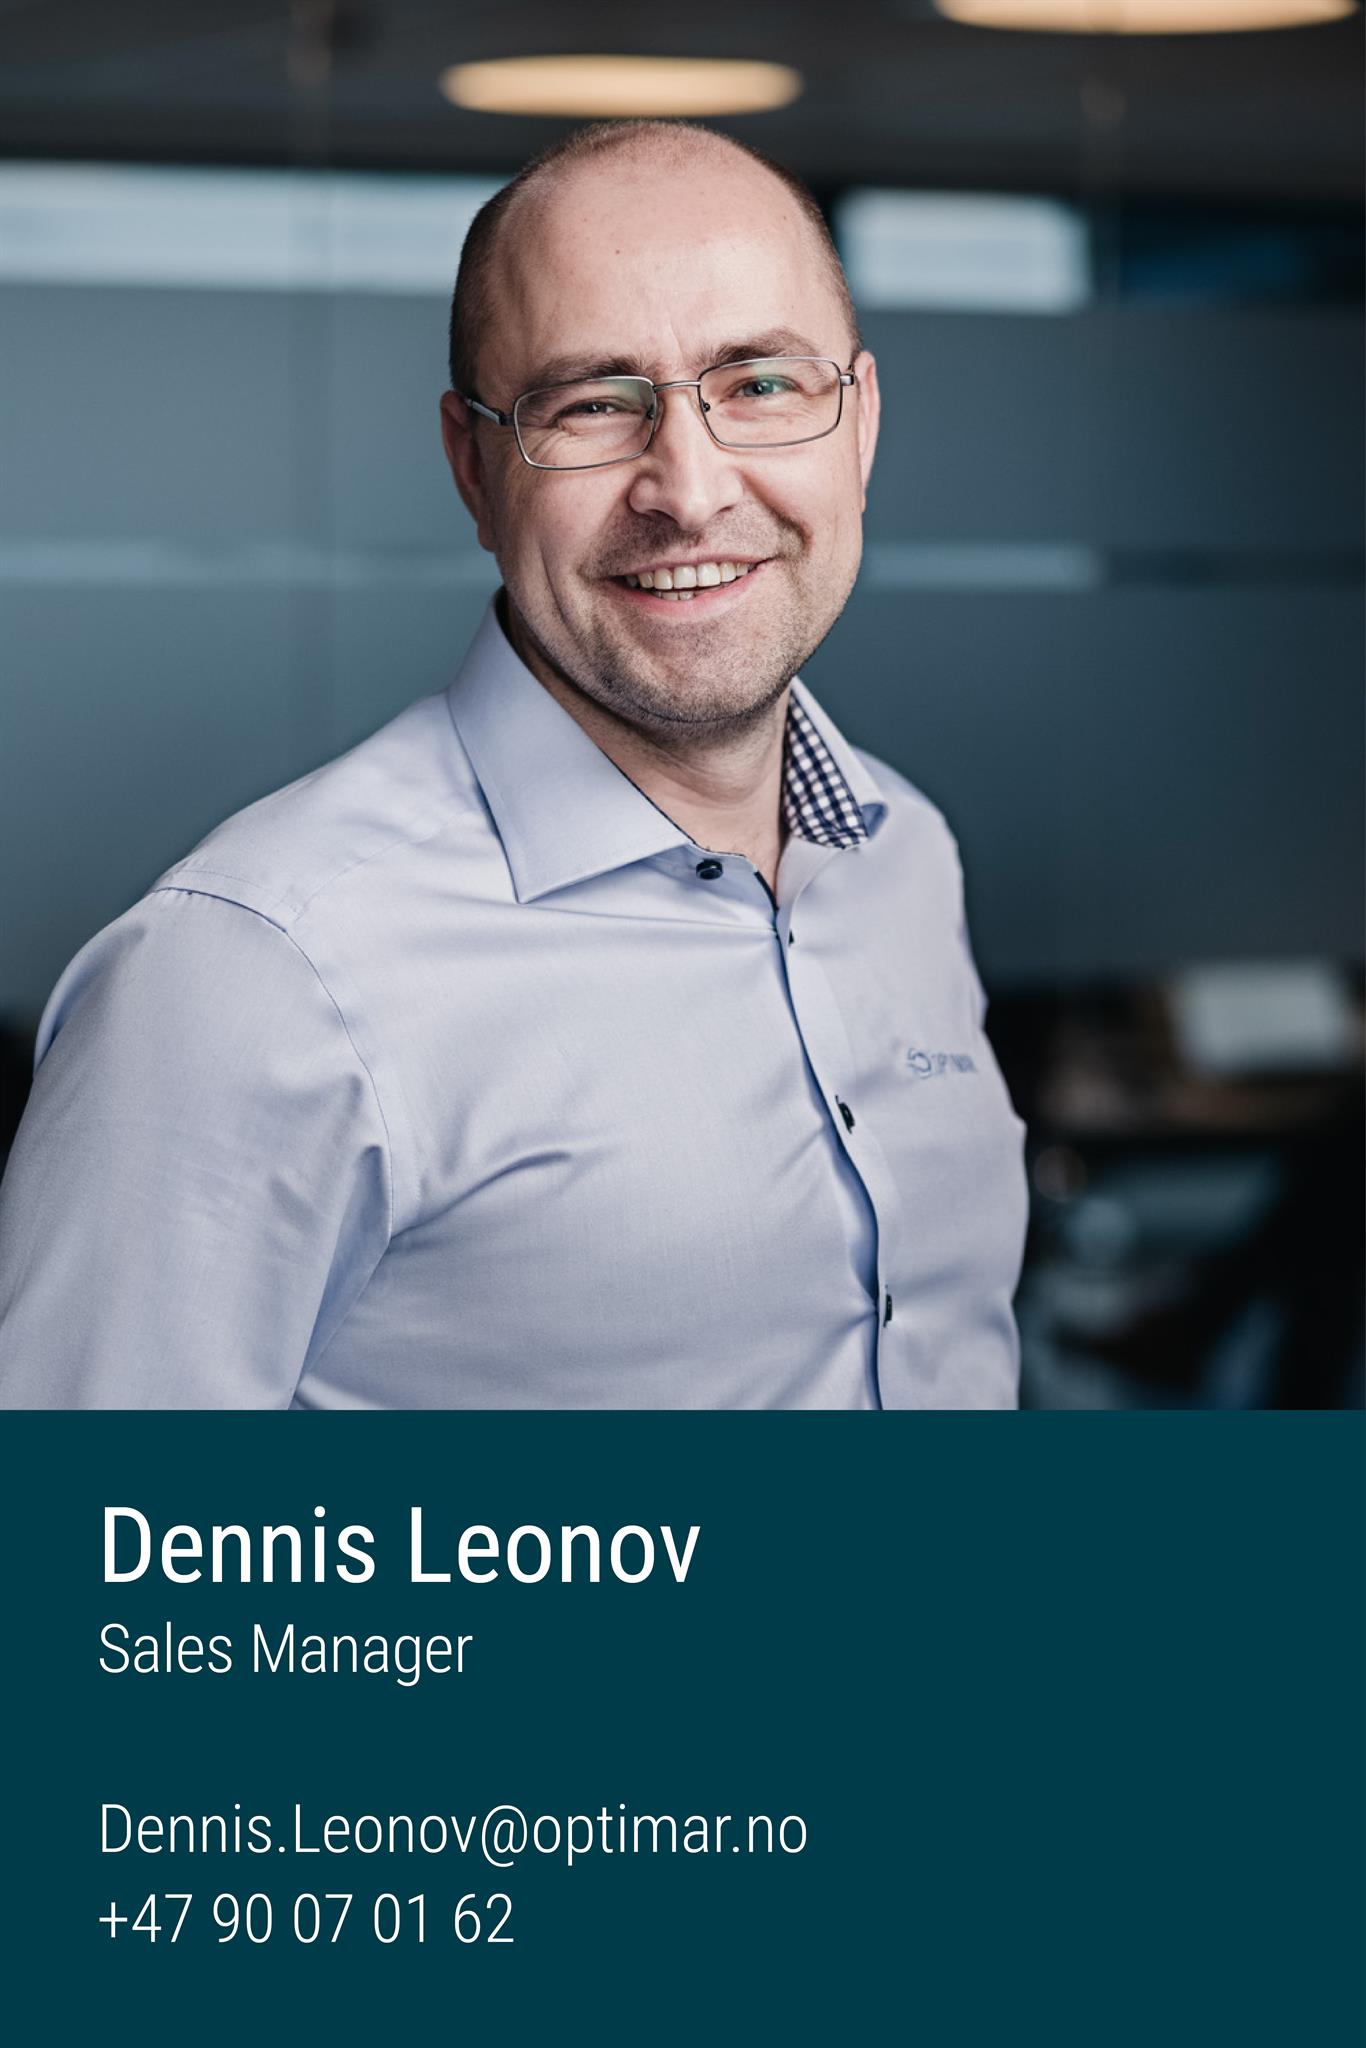 Dennis Leonov